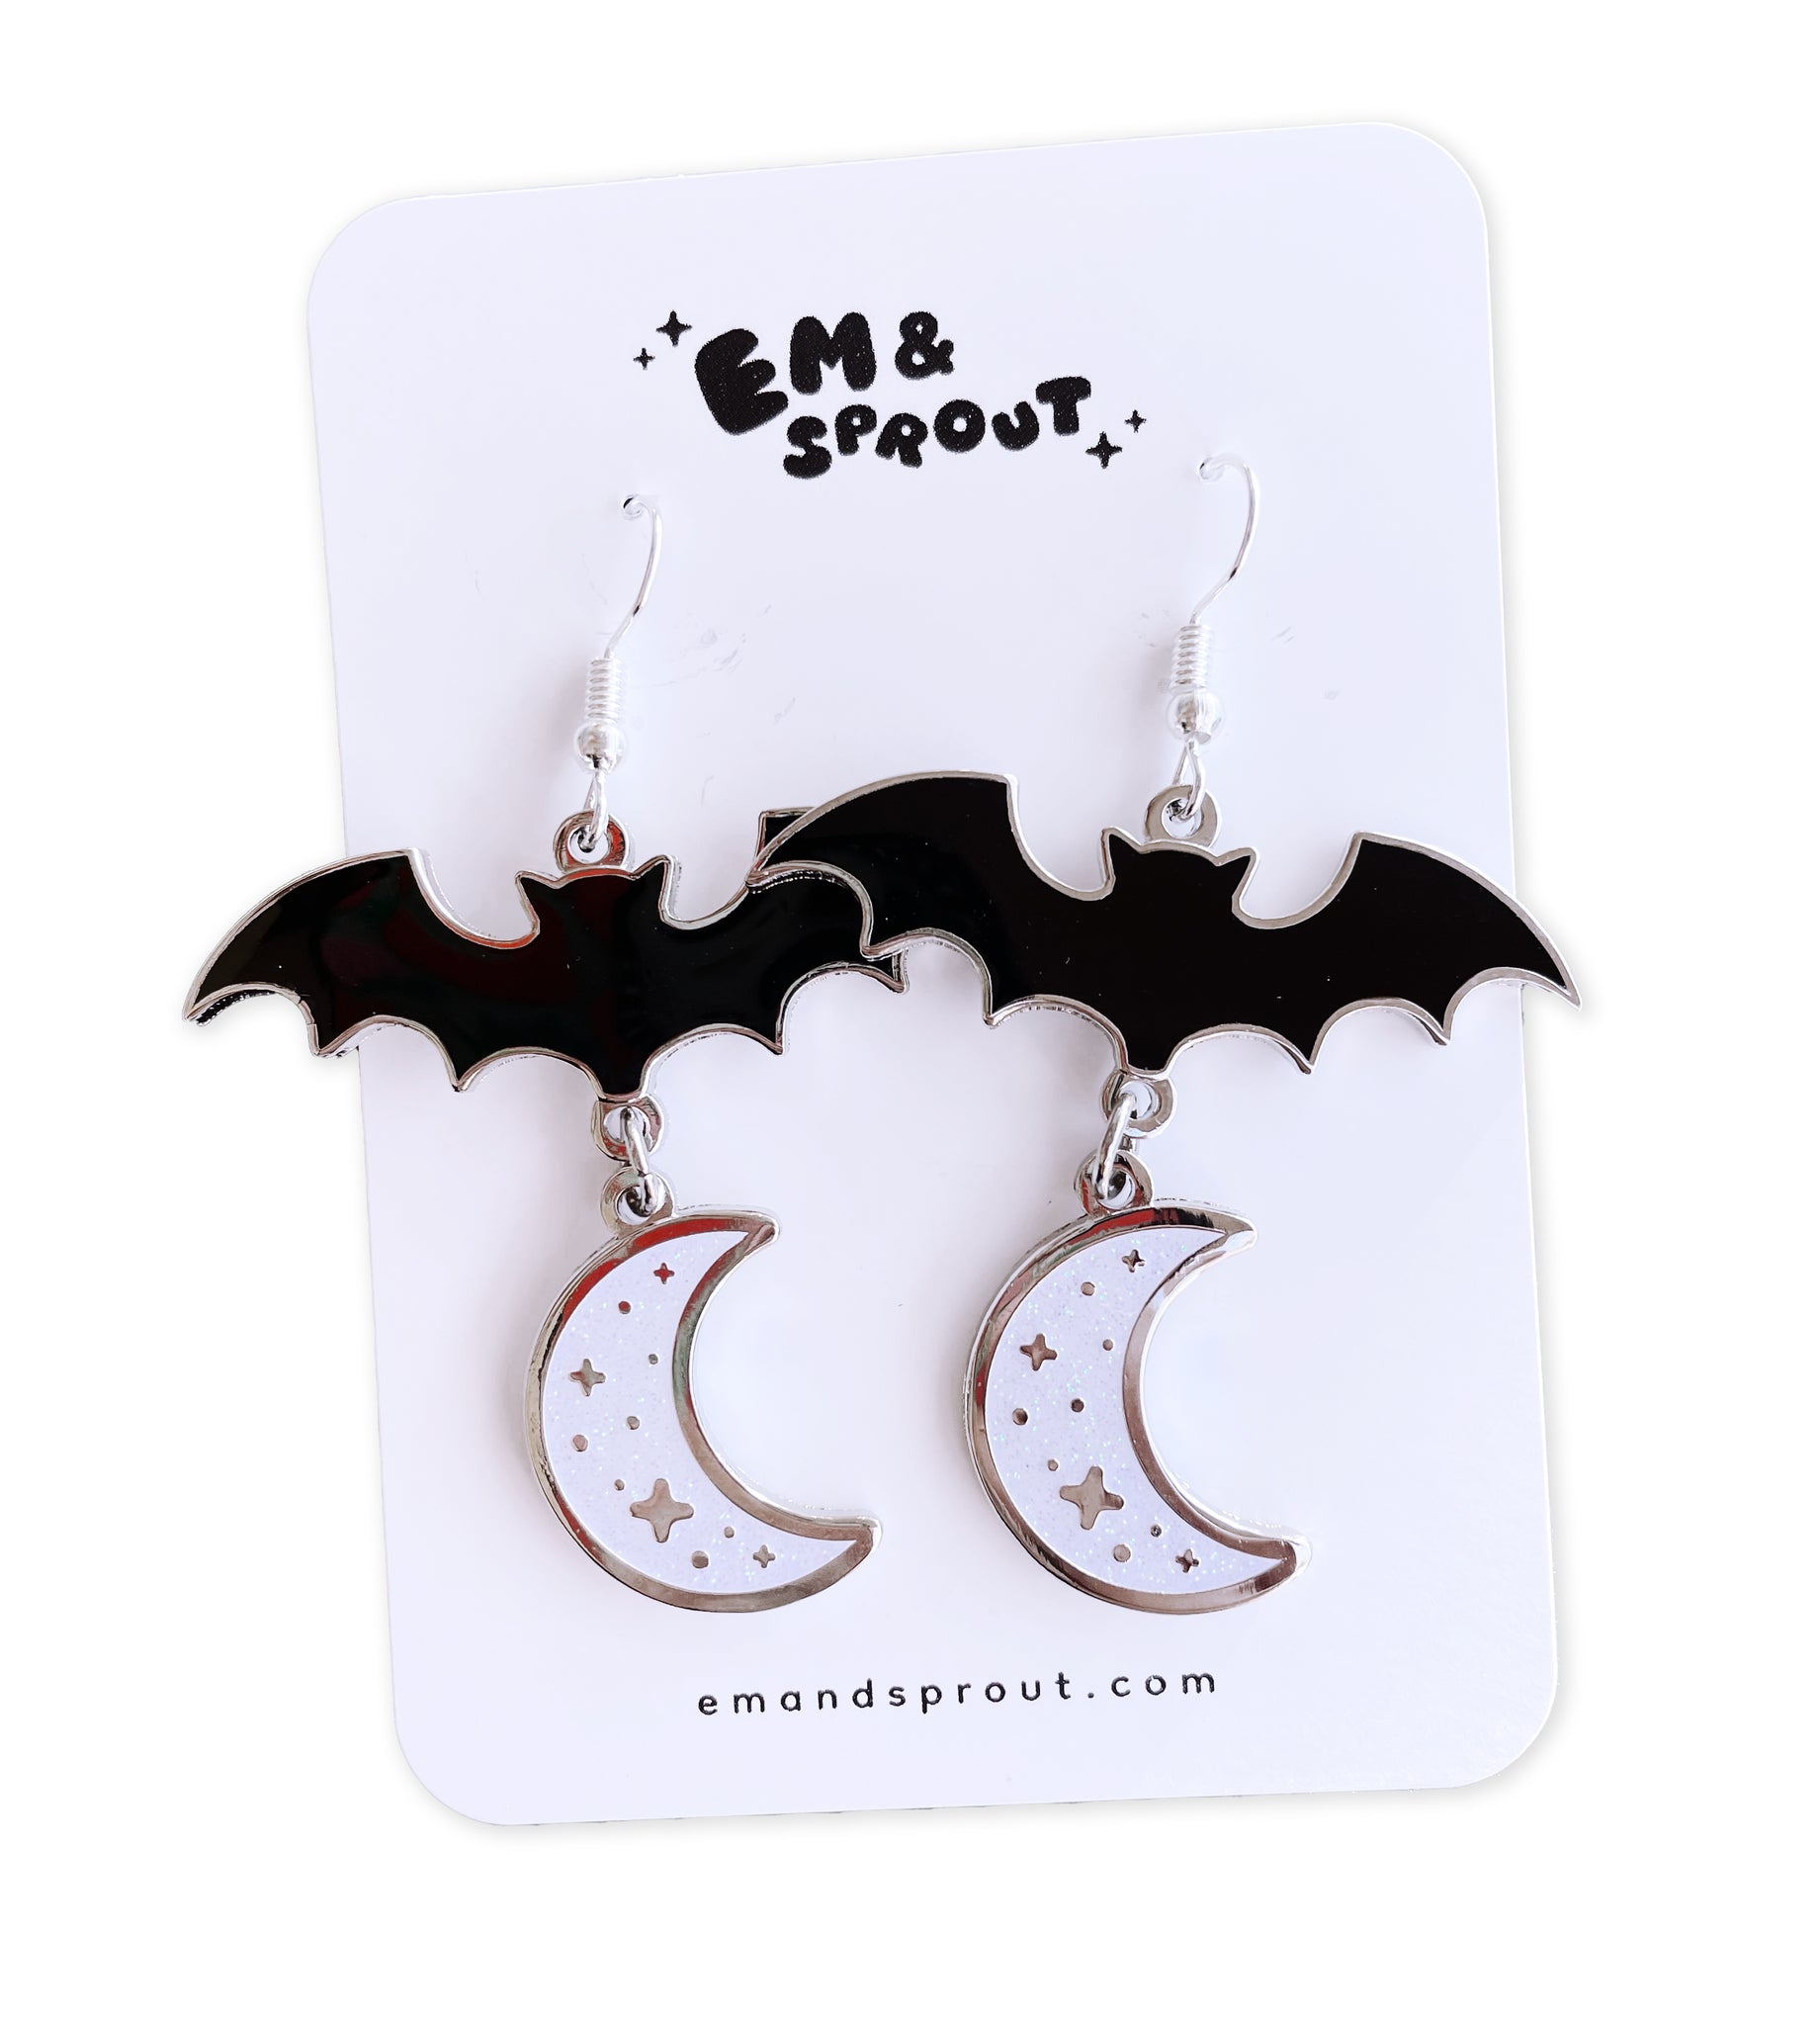 Bat and Moon Glitter Enamel Earrings